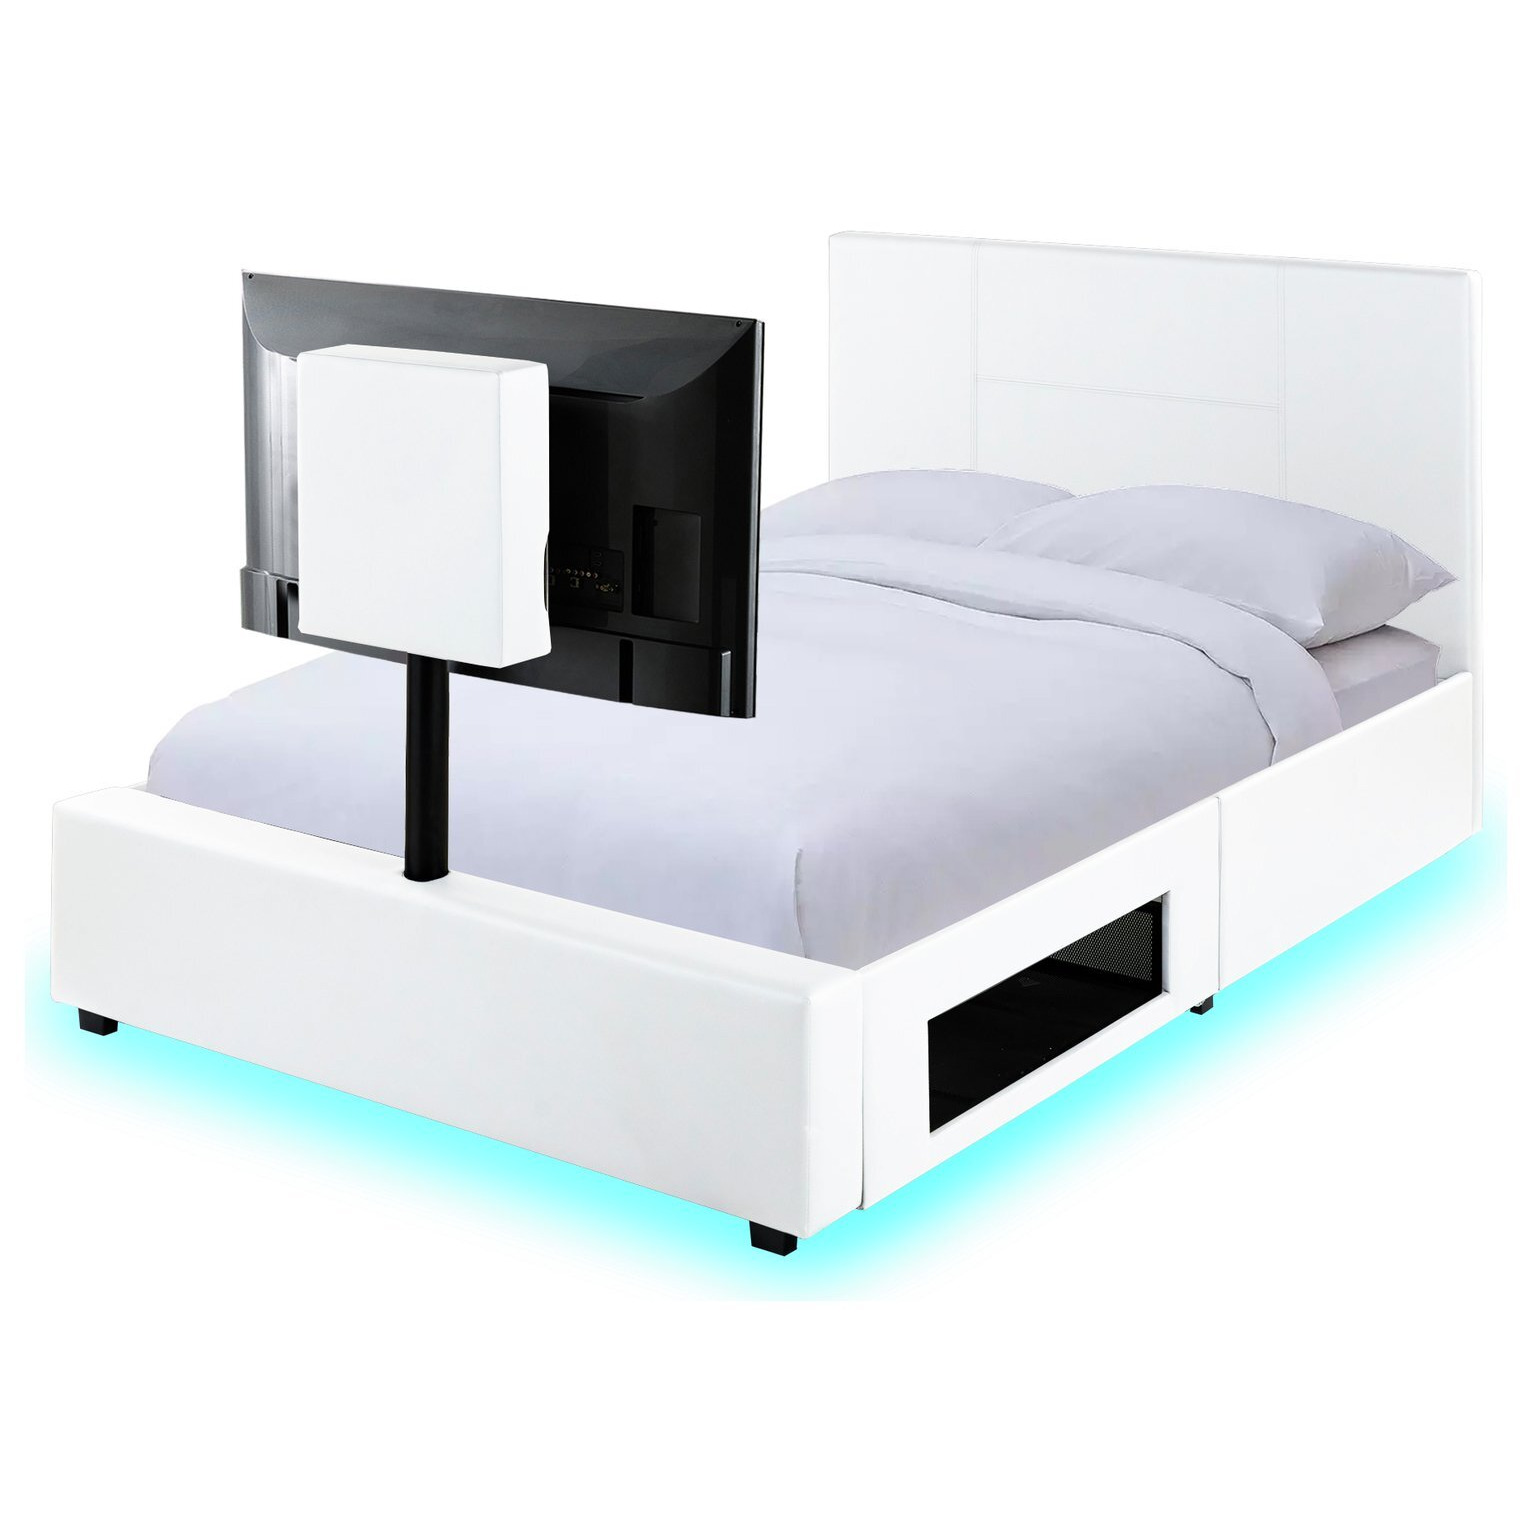 XR Living Ava Kingsize TV Bed Frame - White - image 1